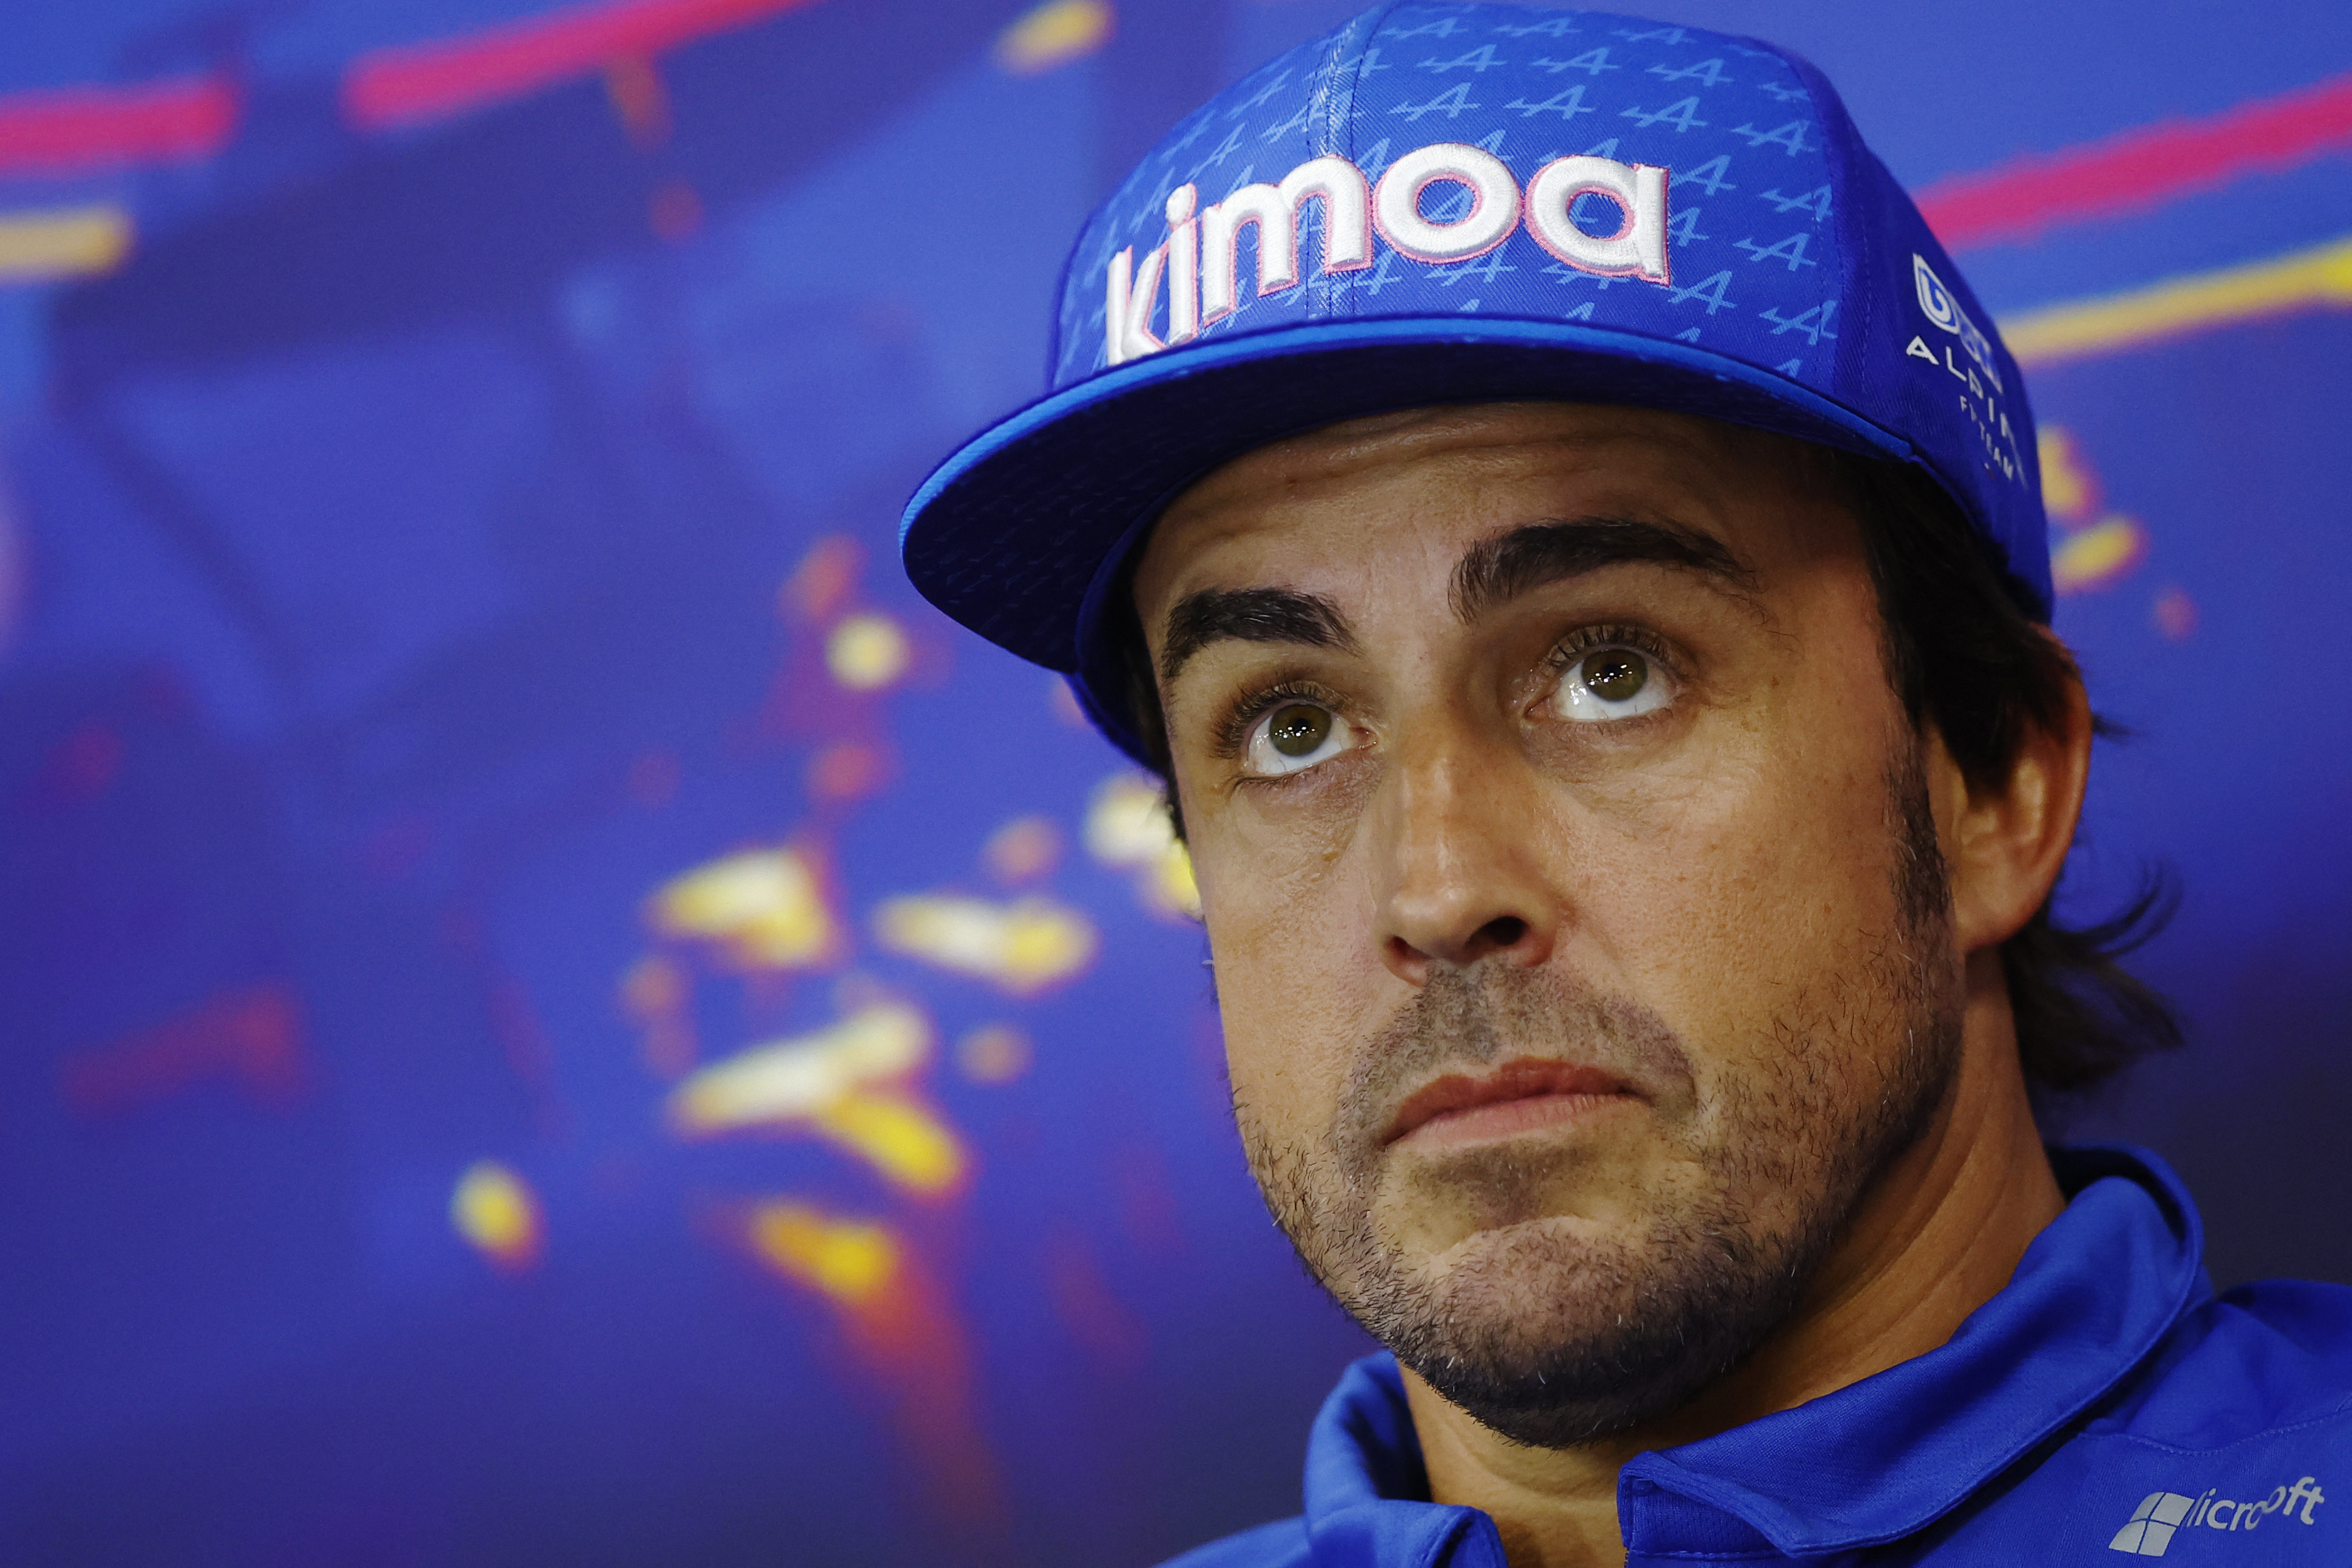 Alonso sa at Hamilton var en idiot etter påvirkning (Reuters)